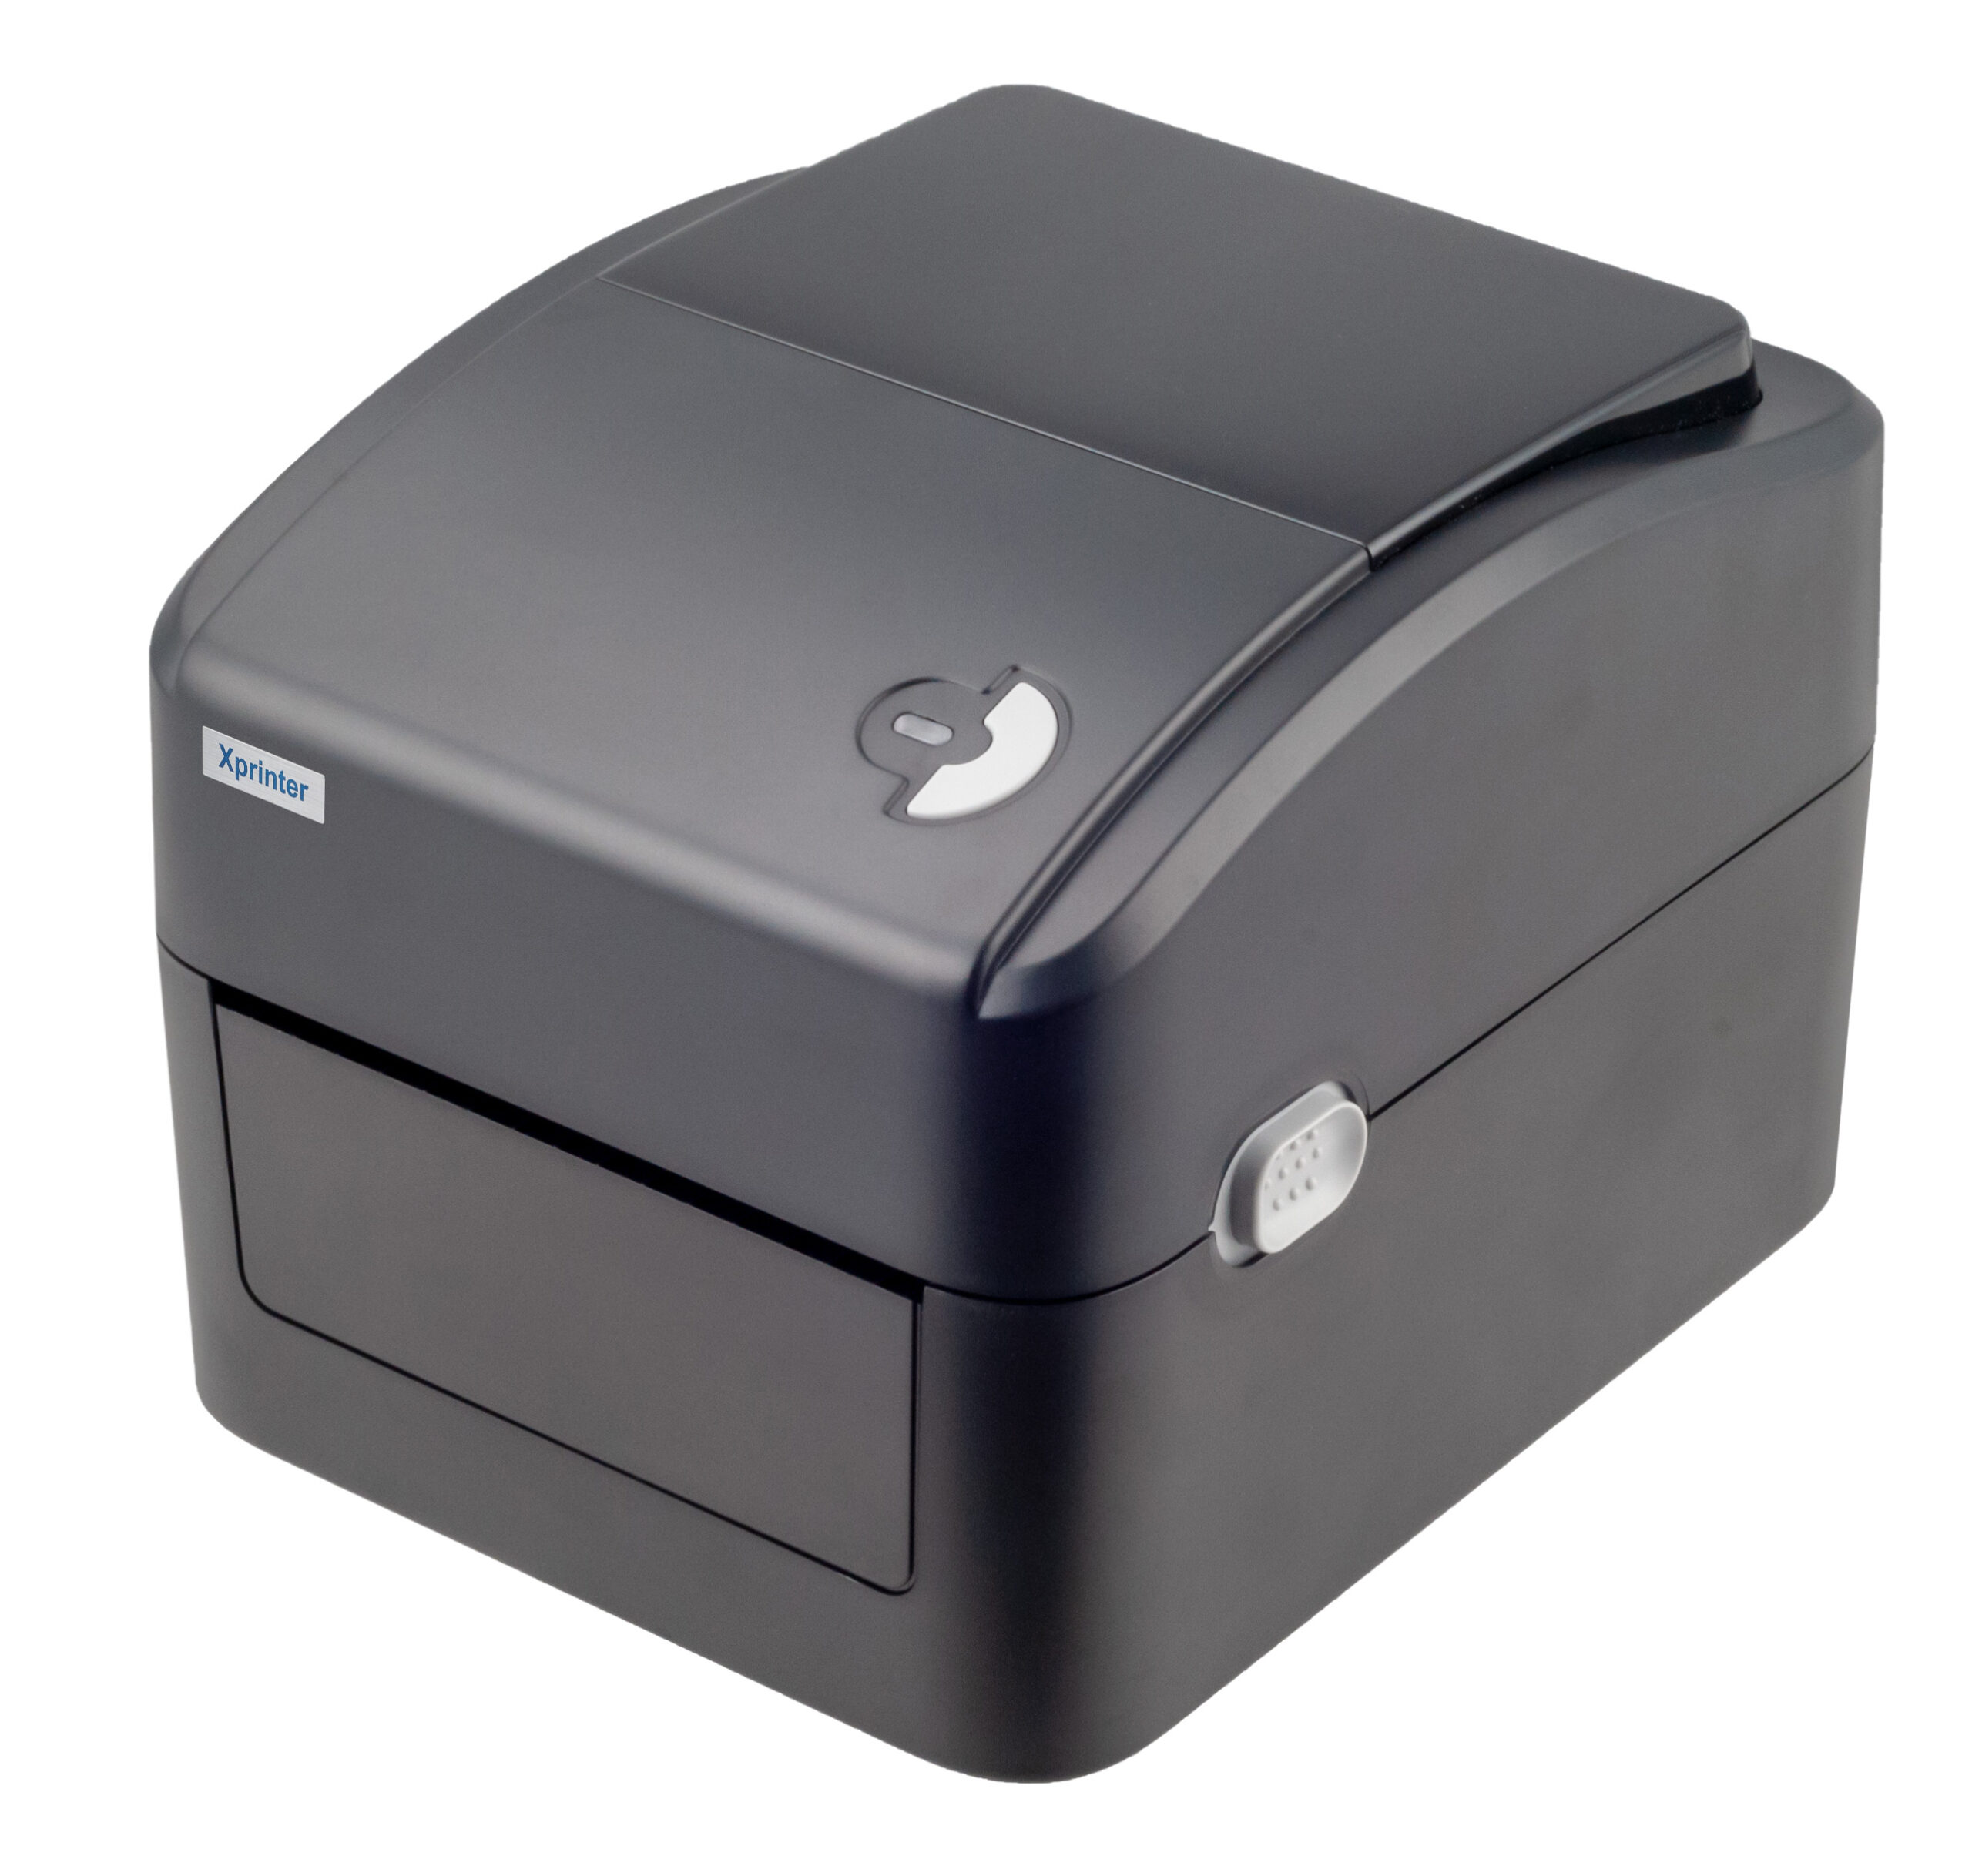 [芯燁台灣總代理]標籤機 打印機 超商出單機 Xp420b 標籤貼紙機 印表機 出貨神器 出貨單 熱感應 條碼機 列印機 8